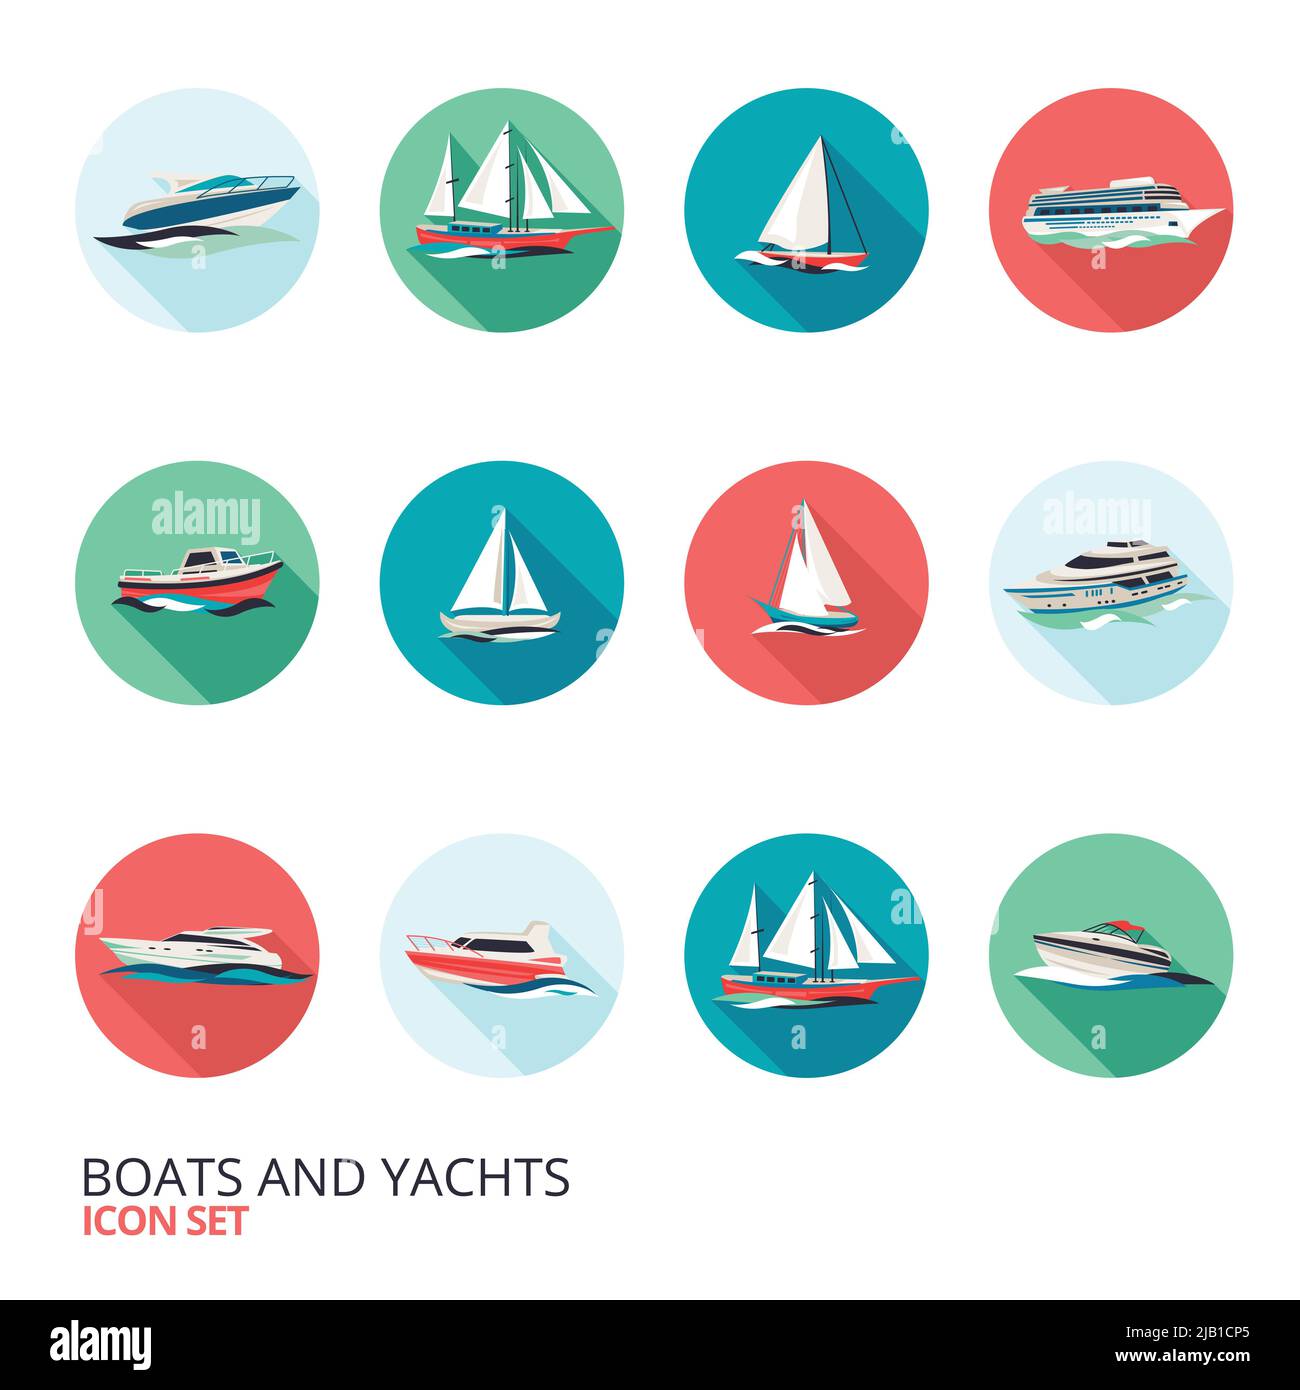 Ocean Urlaub Business Reise Tour Kreuzfahrt Yacht Liner Schiff flach rund solide isoliert Symbole setzen isoliert Vektor Illustration Stock Vektor